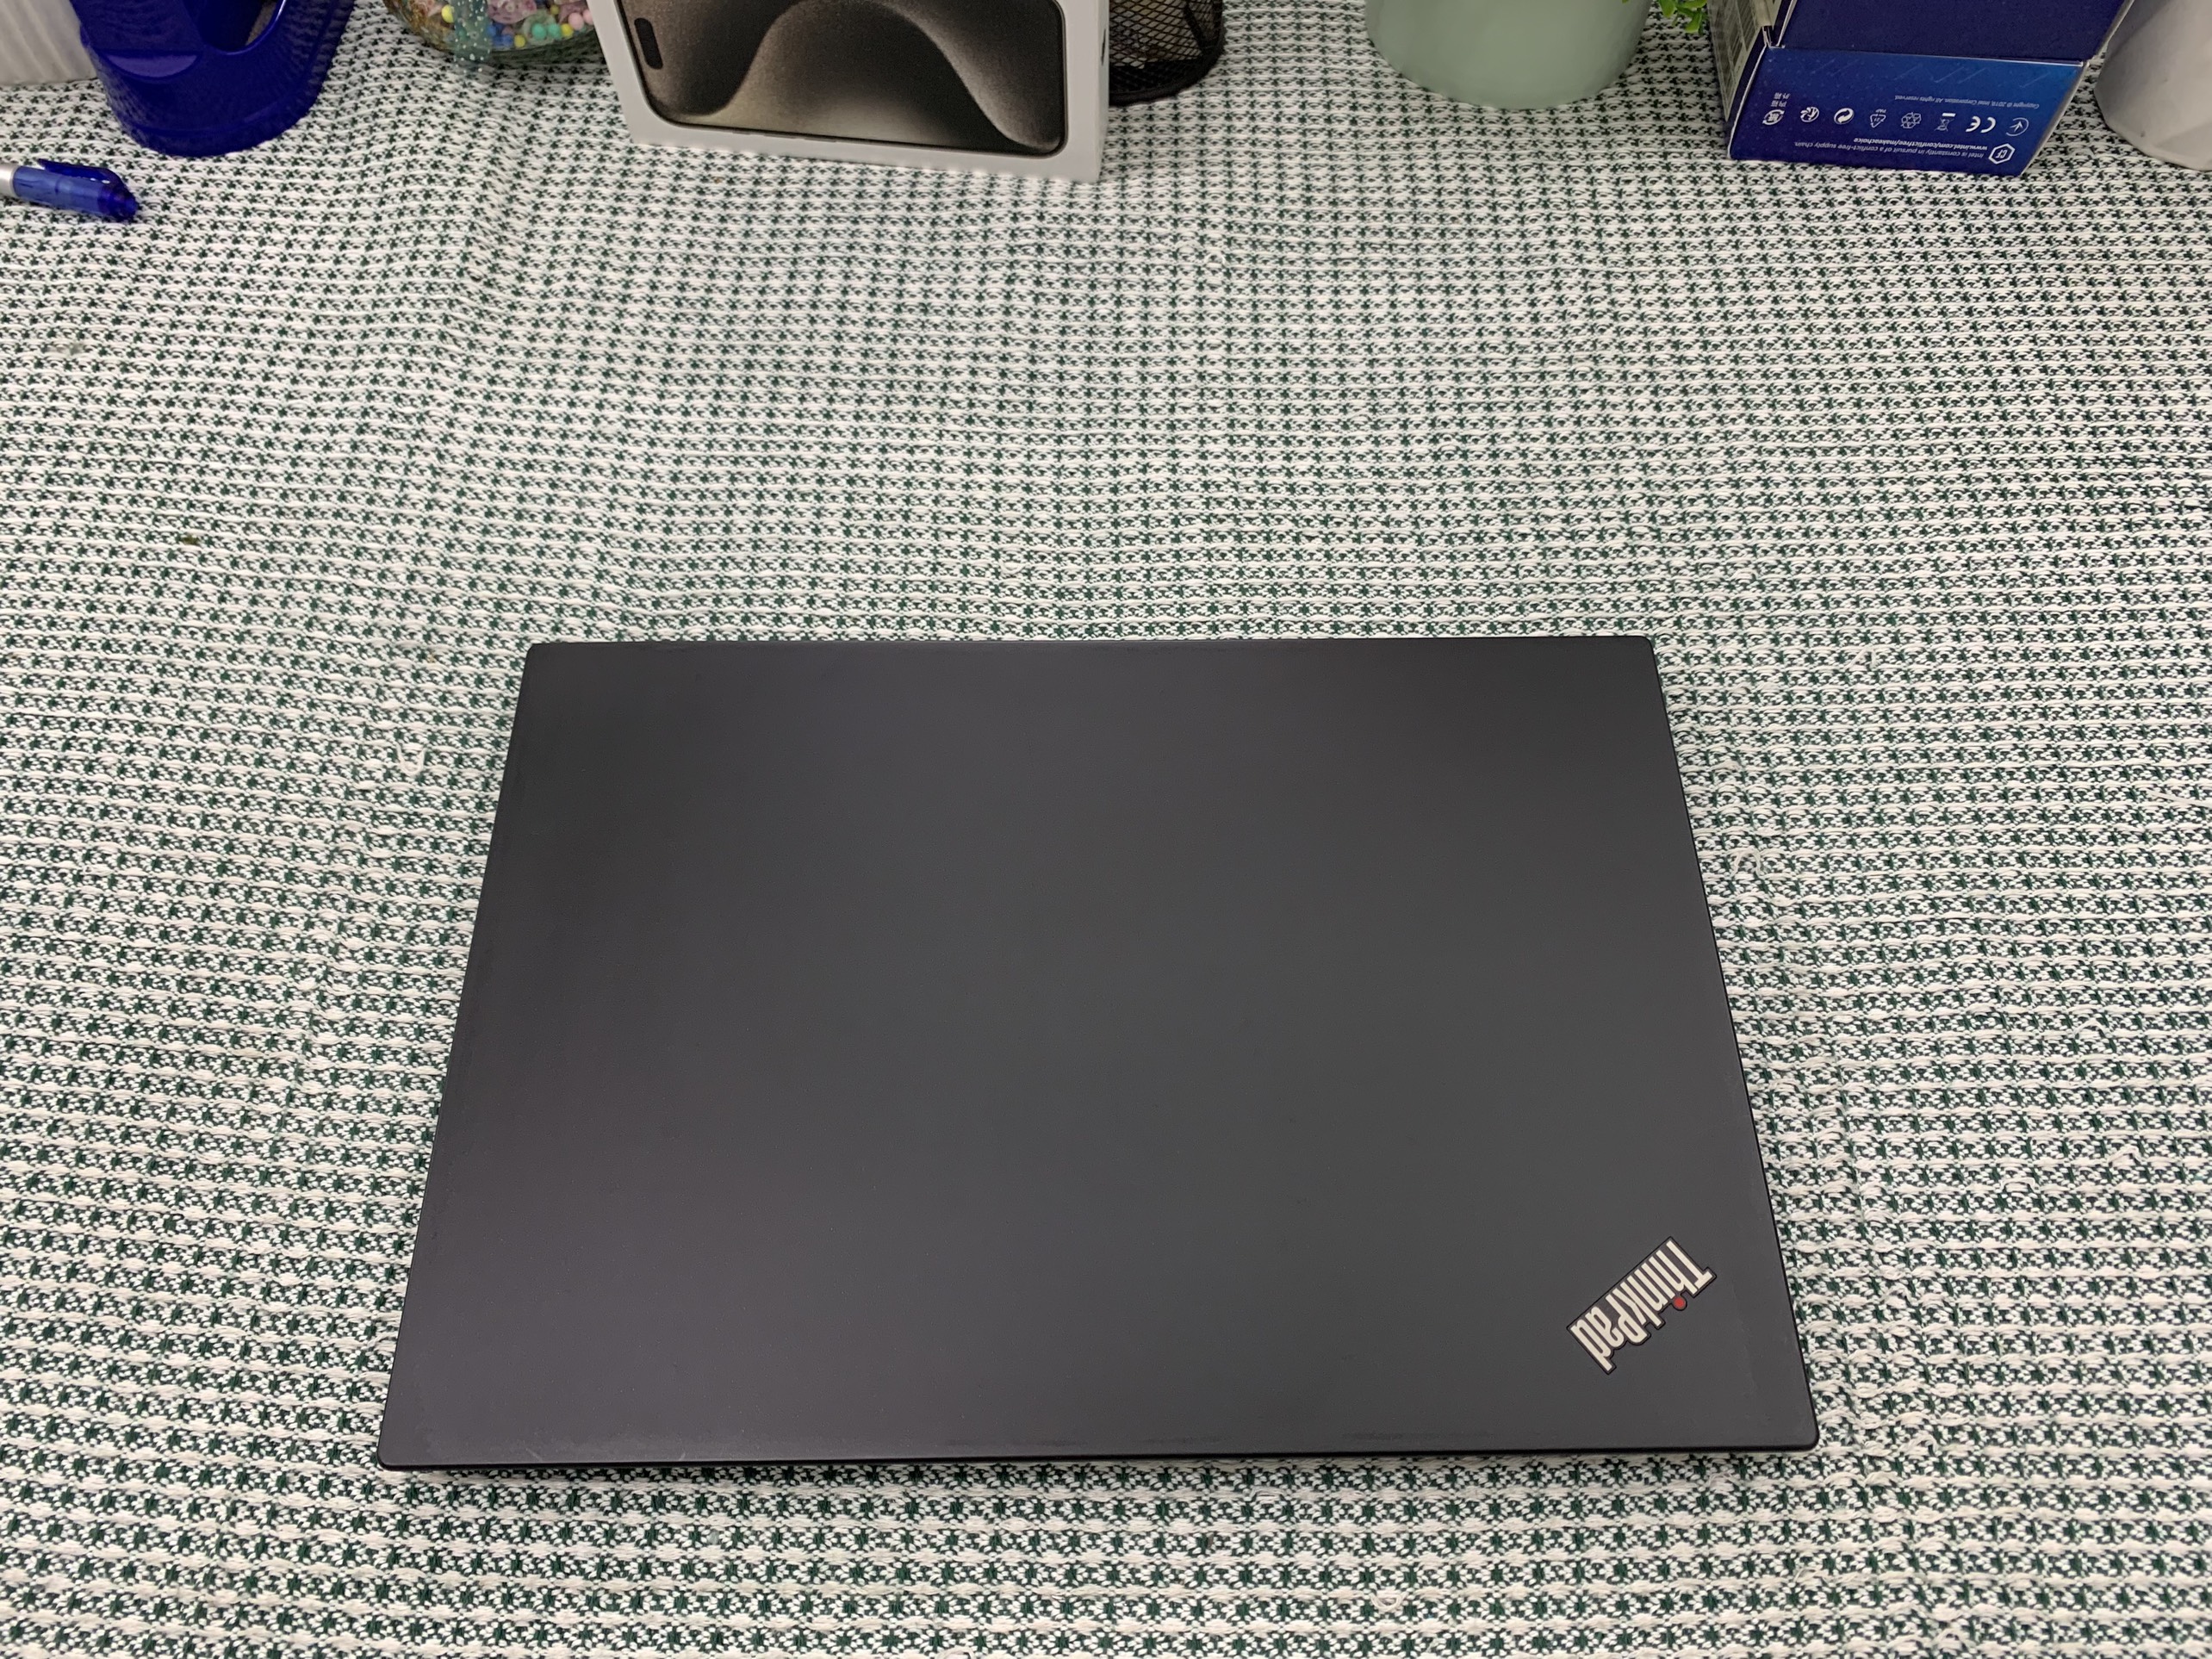 ThinkPad X13 gen 1